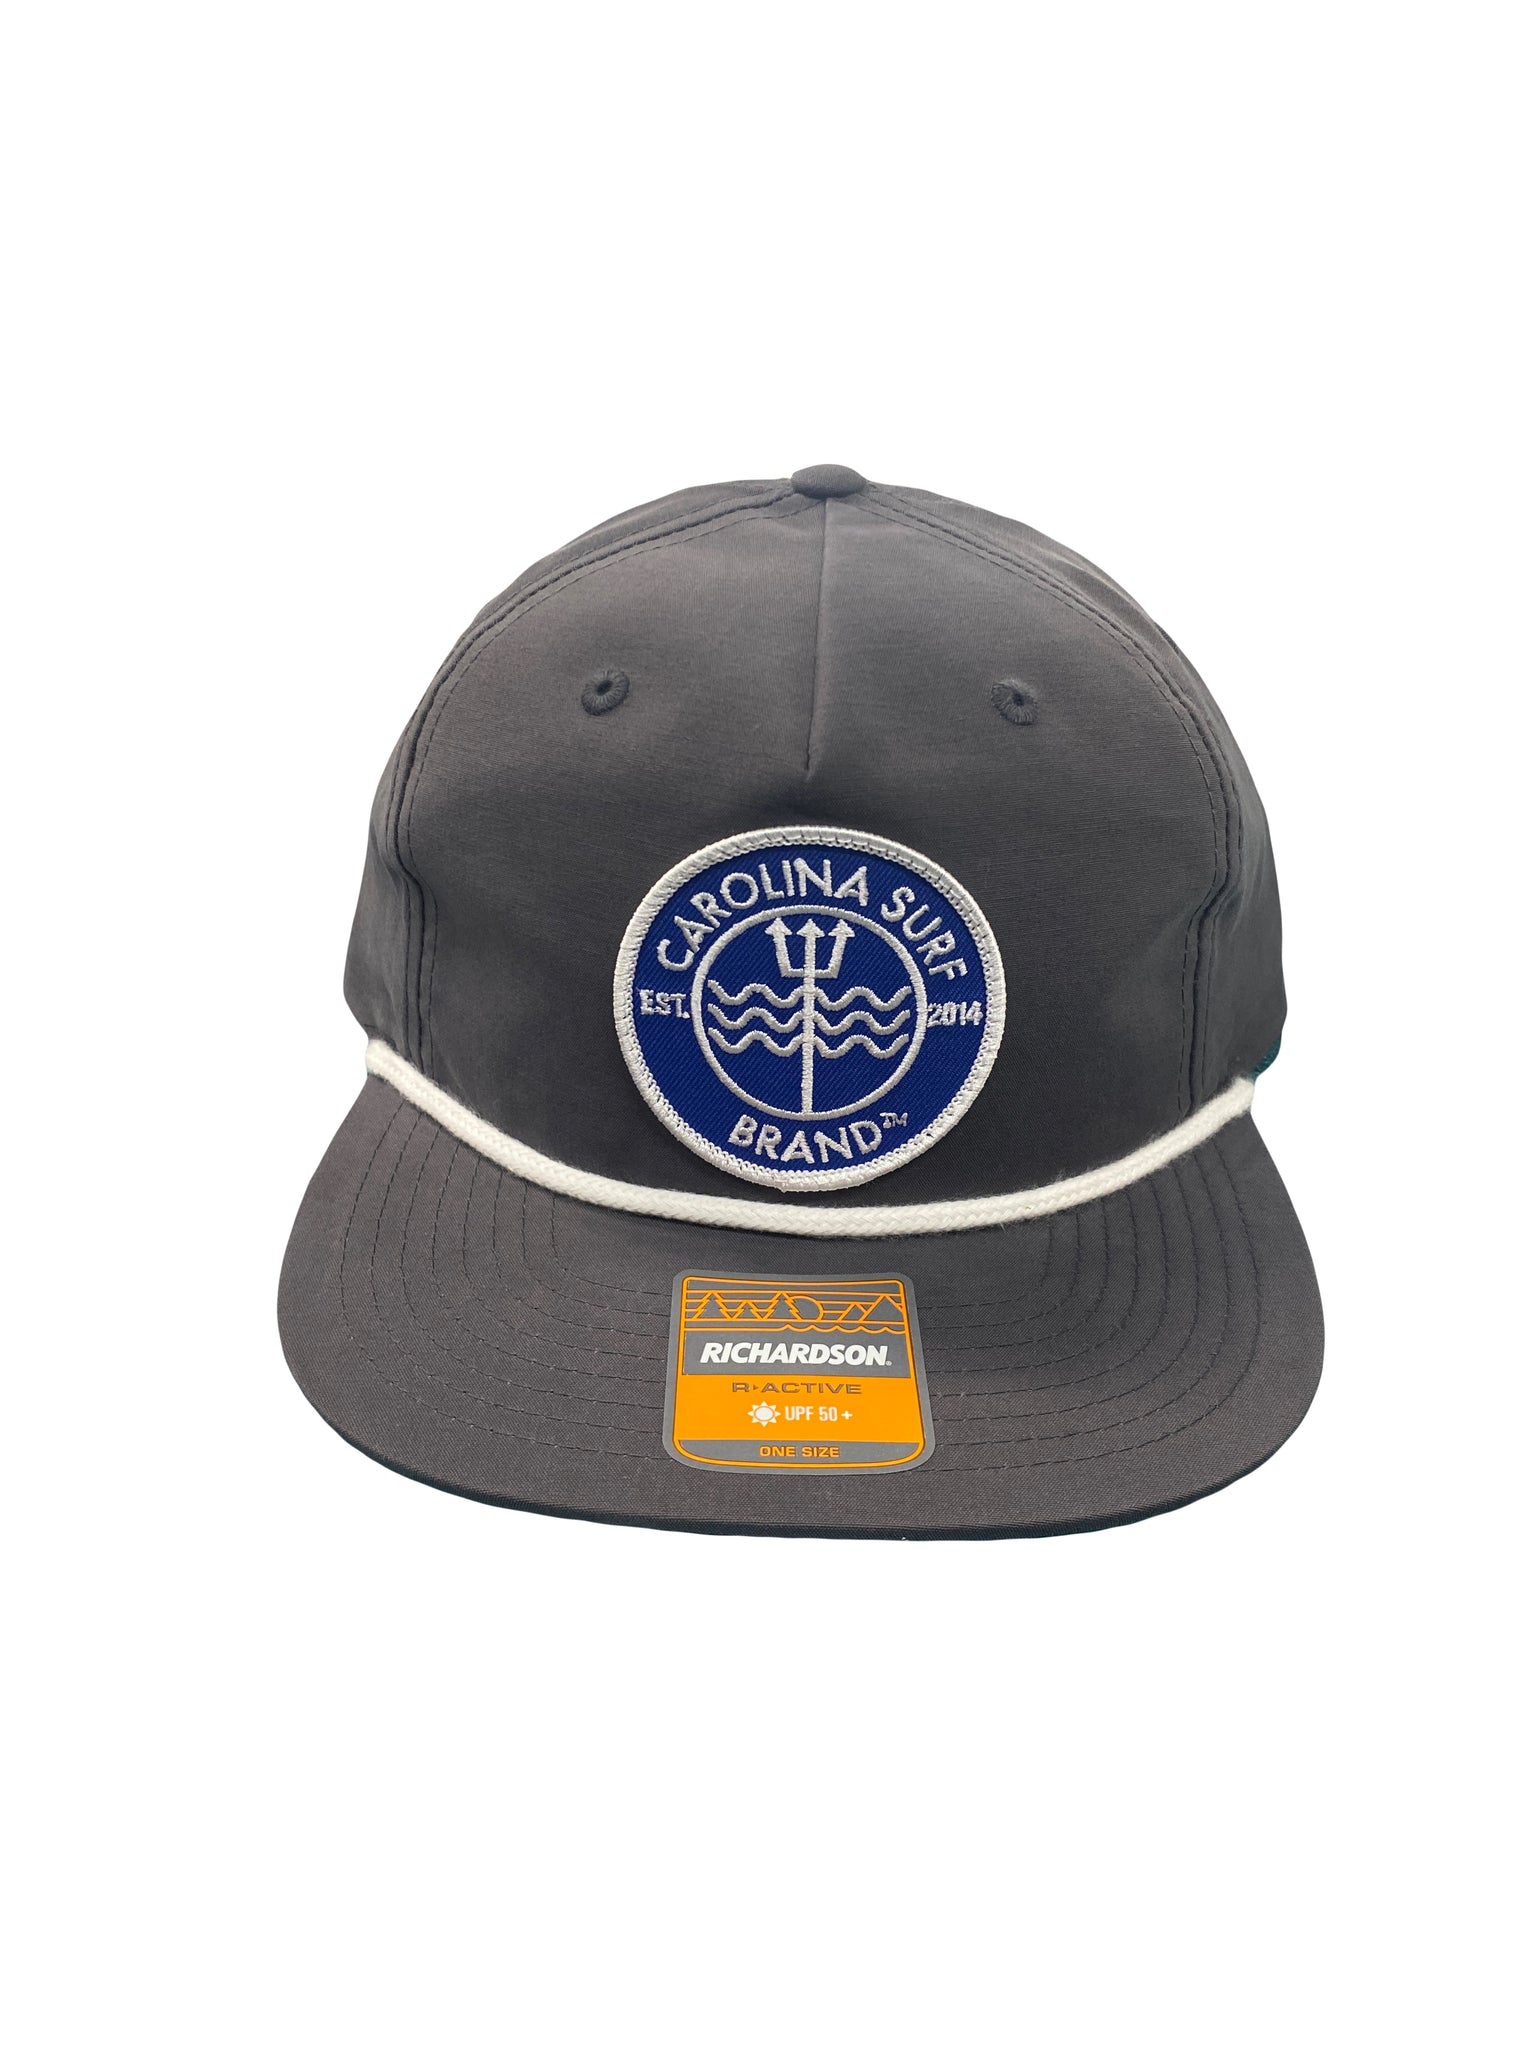 Cap\'n Hat – Carolina Surf Brand